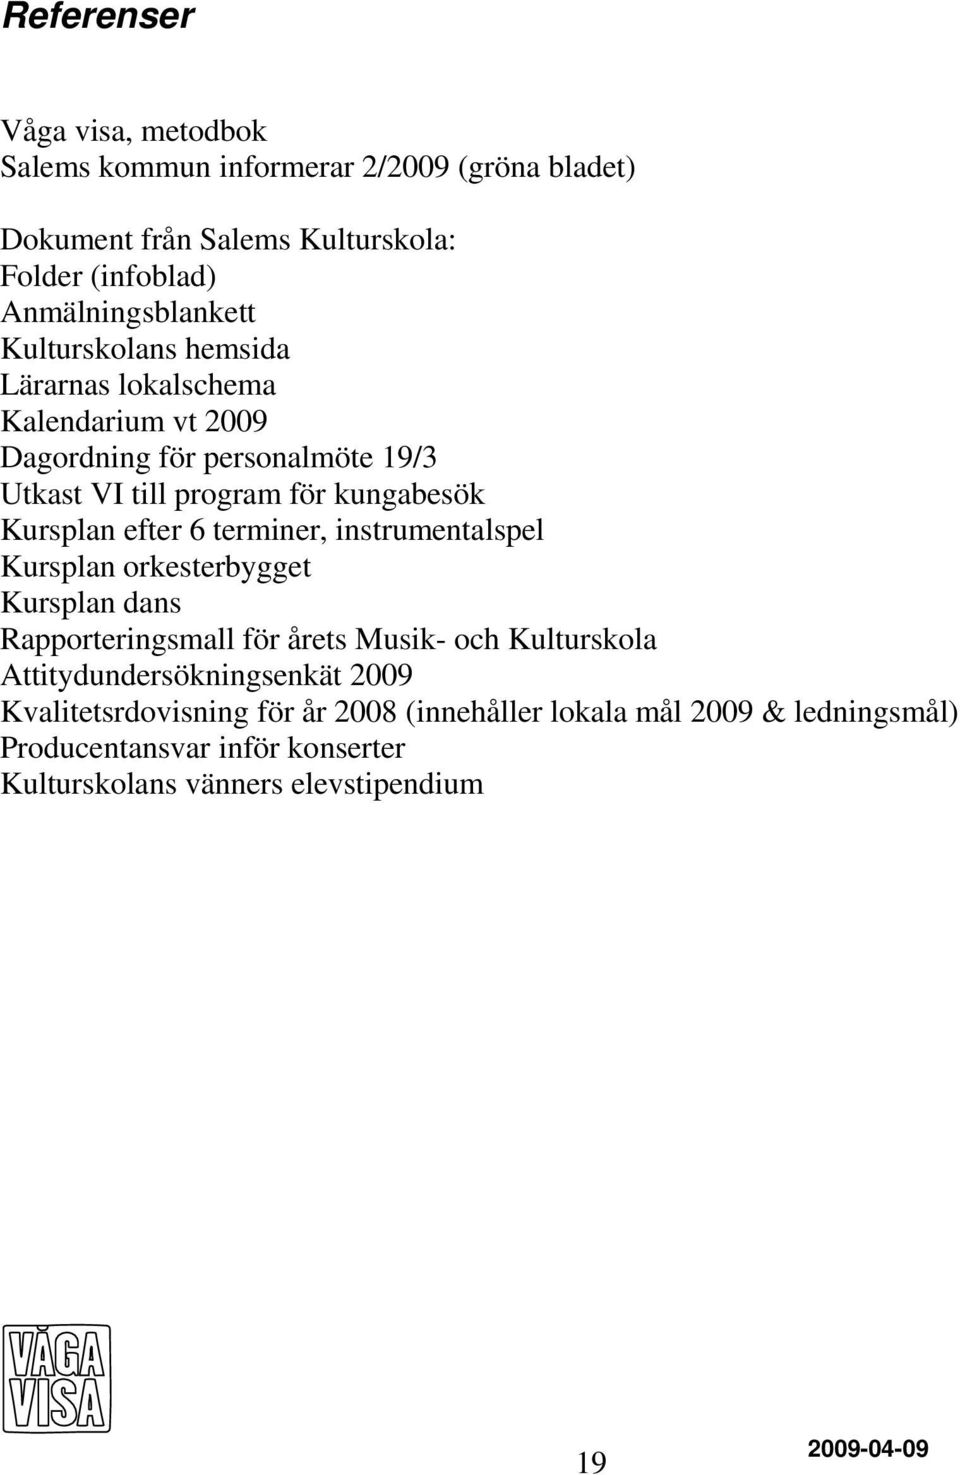 6 terminer, instrumentalspel Kursplan orkesterbygget Kursplan dans Rapporteringsmall för årets Musik- och Kulturskola Attitydundersökningsenkät 2009